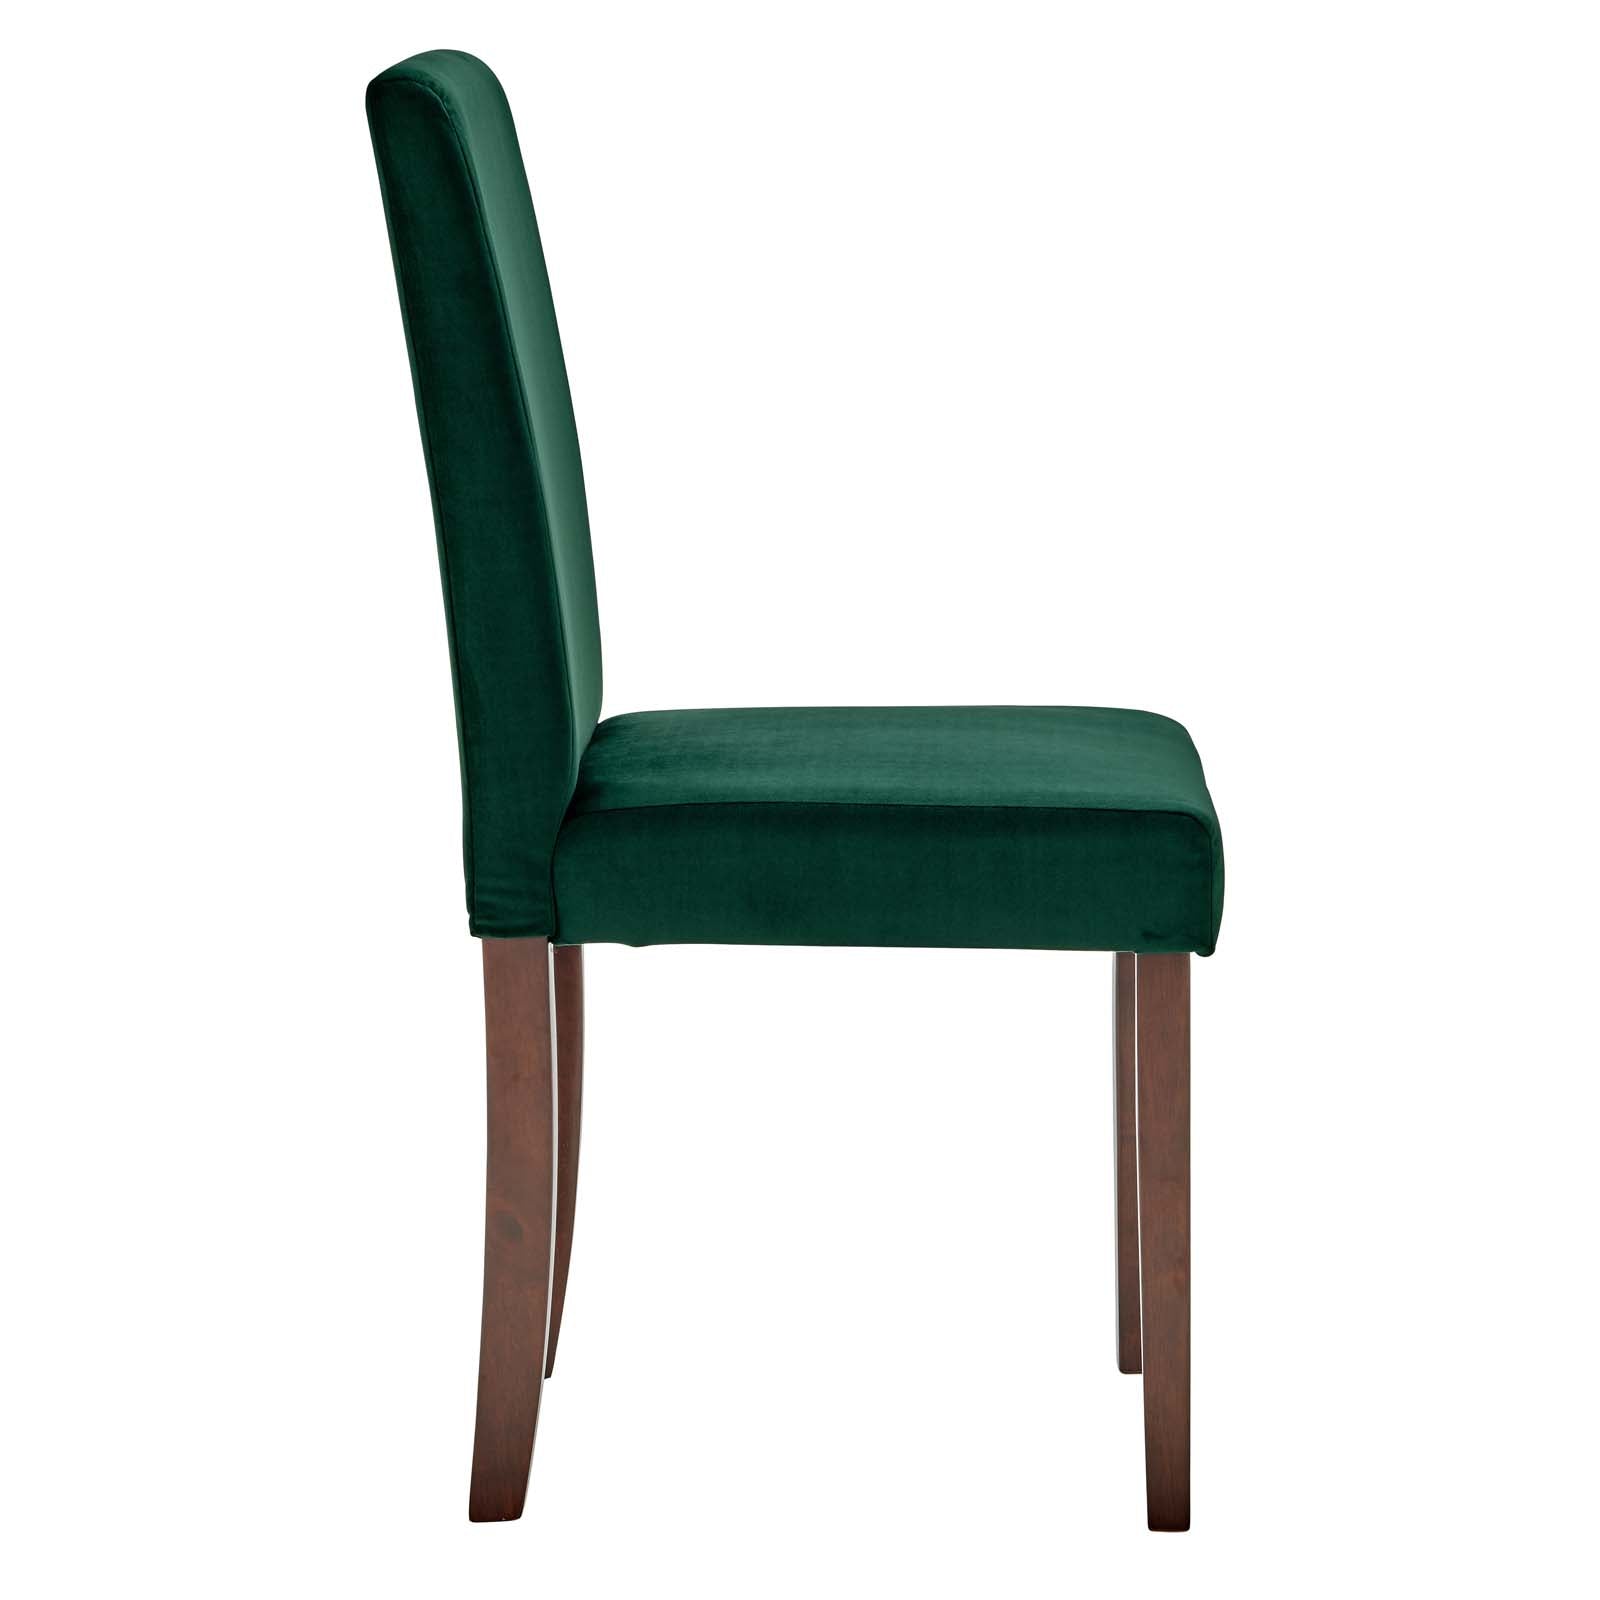 Prosper Upholstered Velvet Dining Side Chair Set of 2